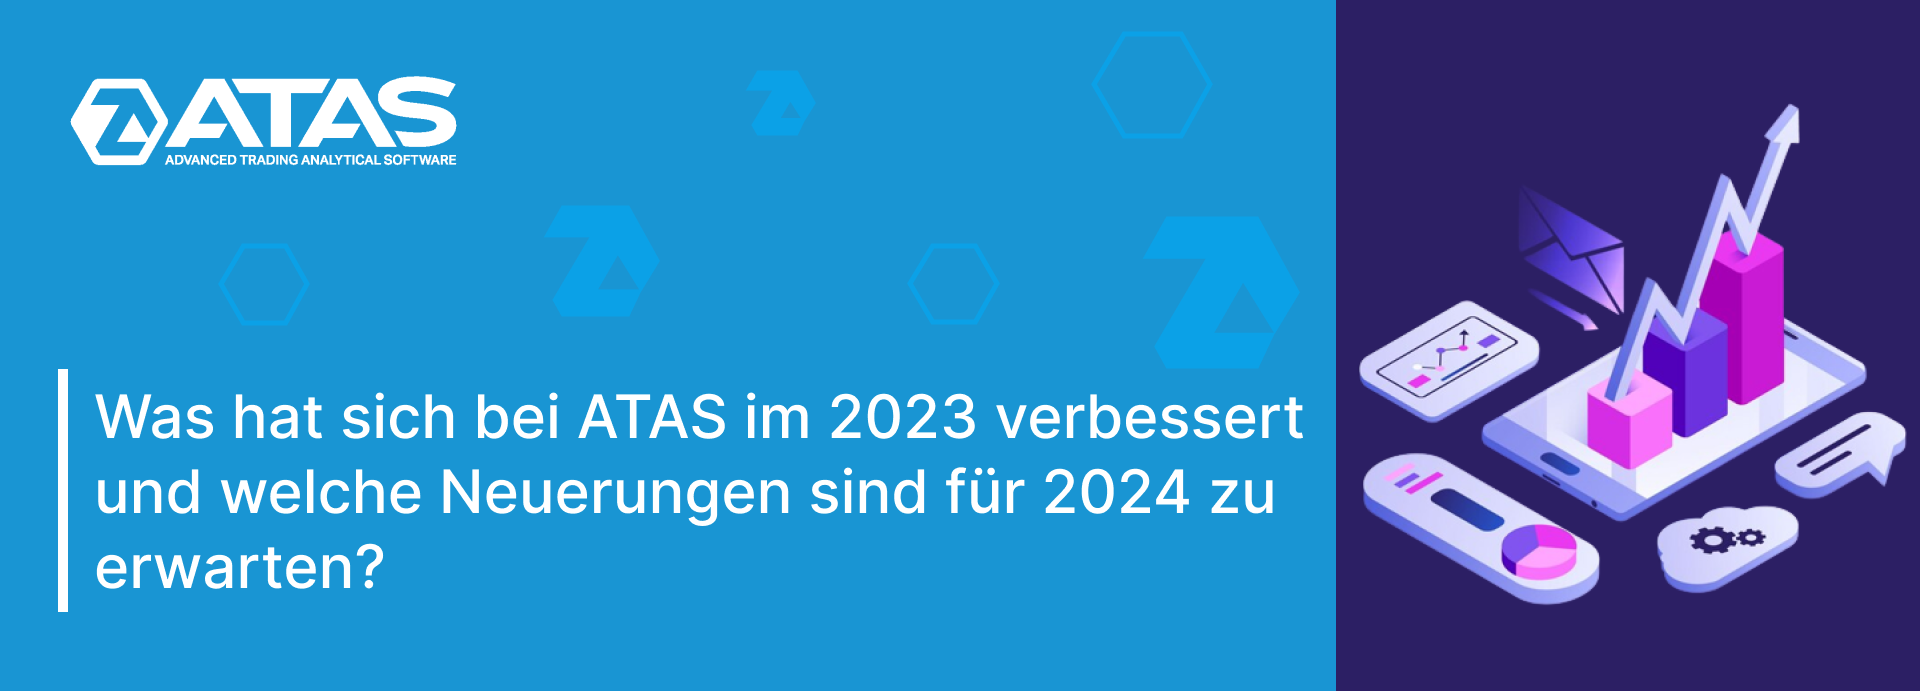 Wichtige Updates von ATAS im 2023 und Pläne für 2024